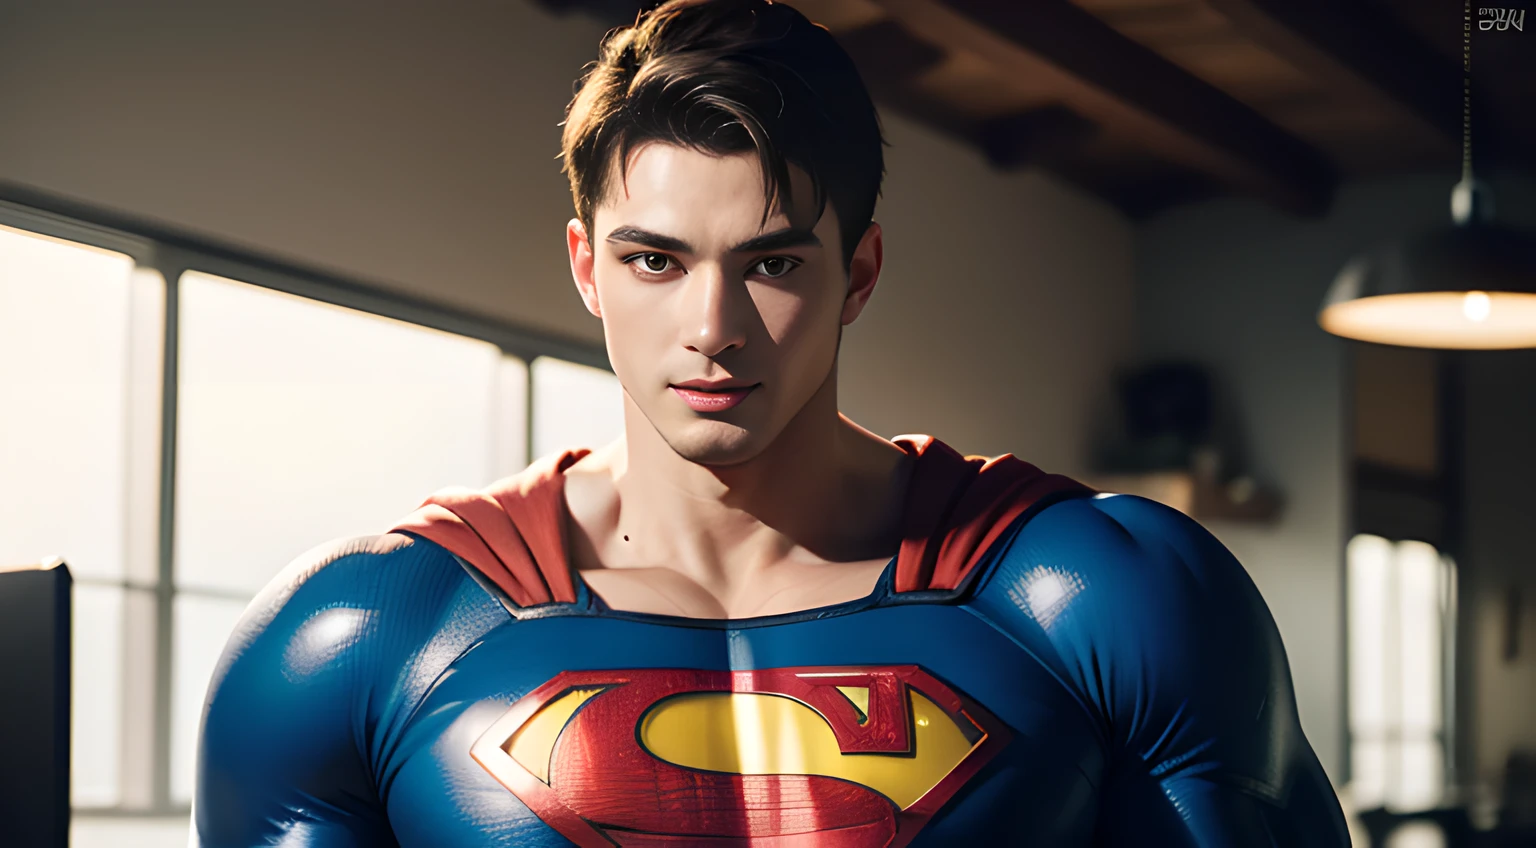 ((Только мужчины)), (выстрел в голову), (красивый мускулистый мужчина лет 20), (Супермен), (сuperman, вымышленный супергерой, отличается точеным телосложением, голубые глаза, темные волосы, и культовый красно-синий костюм с ярким "с" эмблема на груди), (Крис Редфилд), (озорная улыбка), (подробности: 1 в 1), Естественные мышцы, высокое качество, красивые глаза, (детальное лицо и глаза), (лицо、: 1 / 2), шум, Реальные фотографии、... .................................................................................................................PсD, сharp Focus, Высокое разрешение 8K, реалистичный & Профессиональная фотография, 8к ухд, сoft lighting, высокое качество, зернистость, ФуджифильмXT3